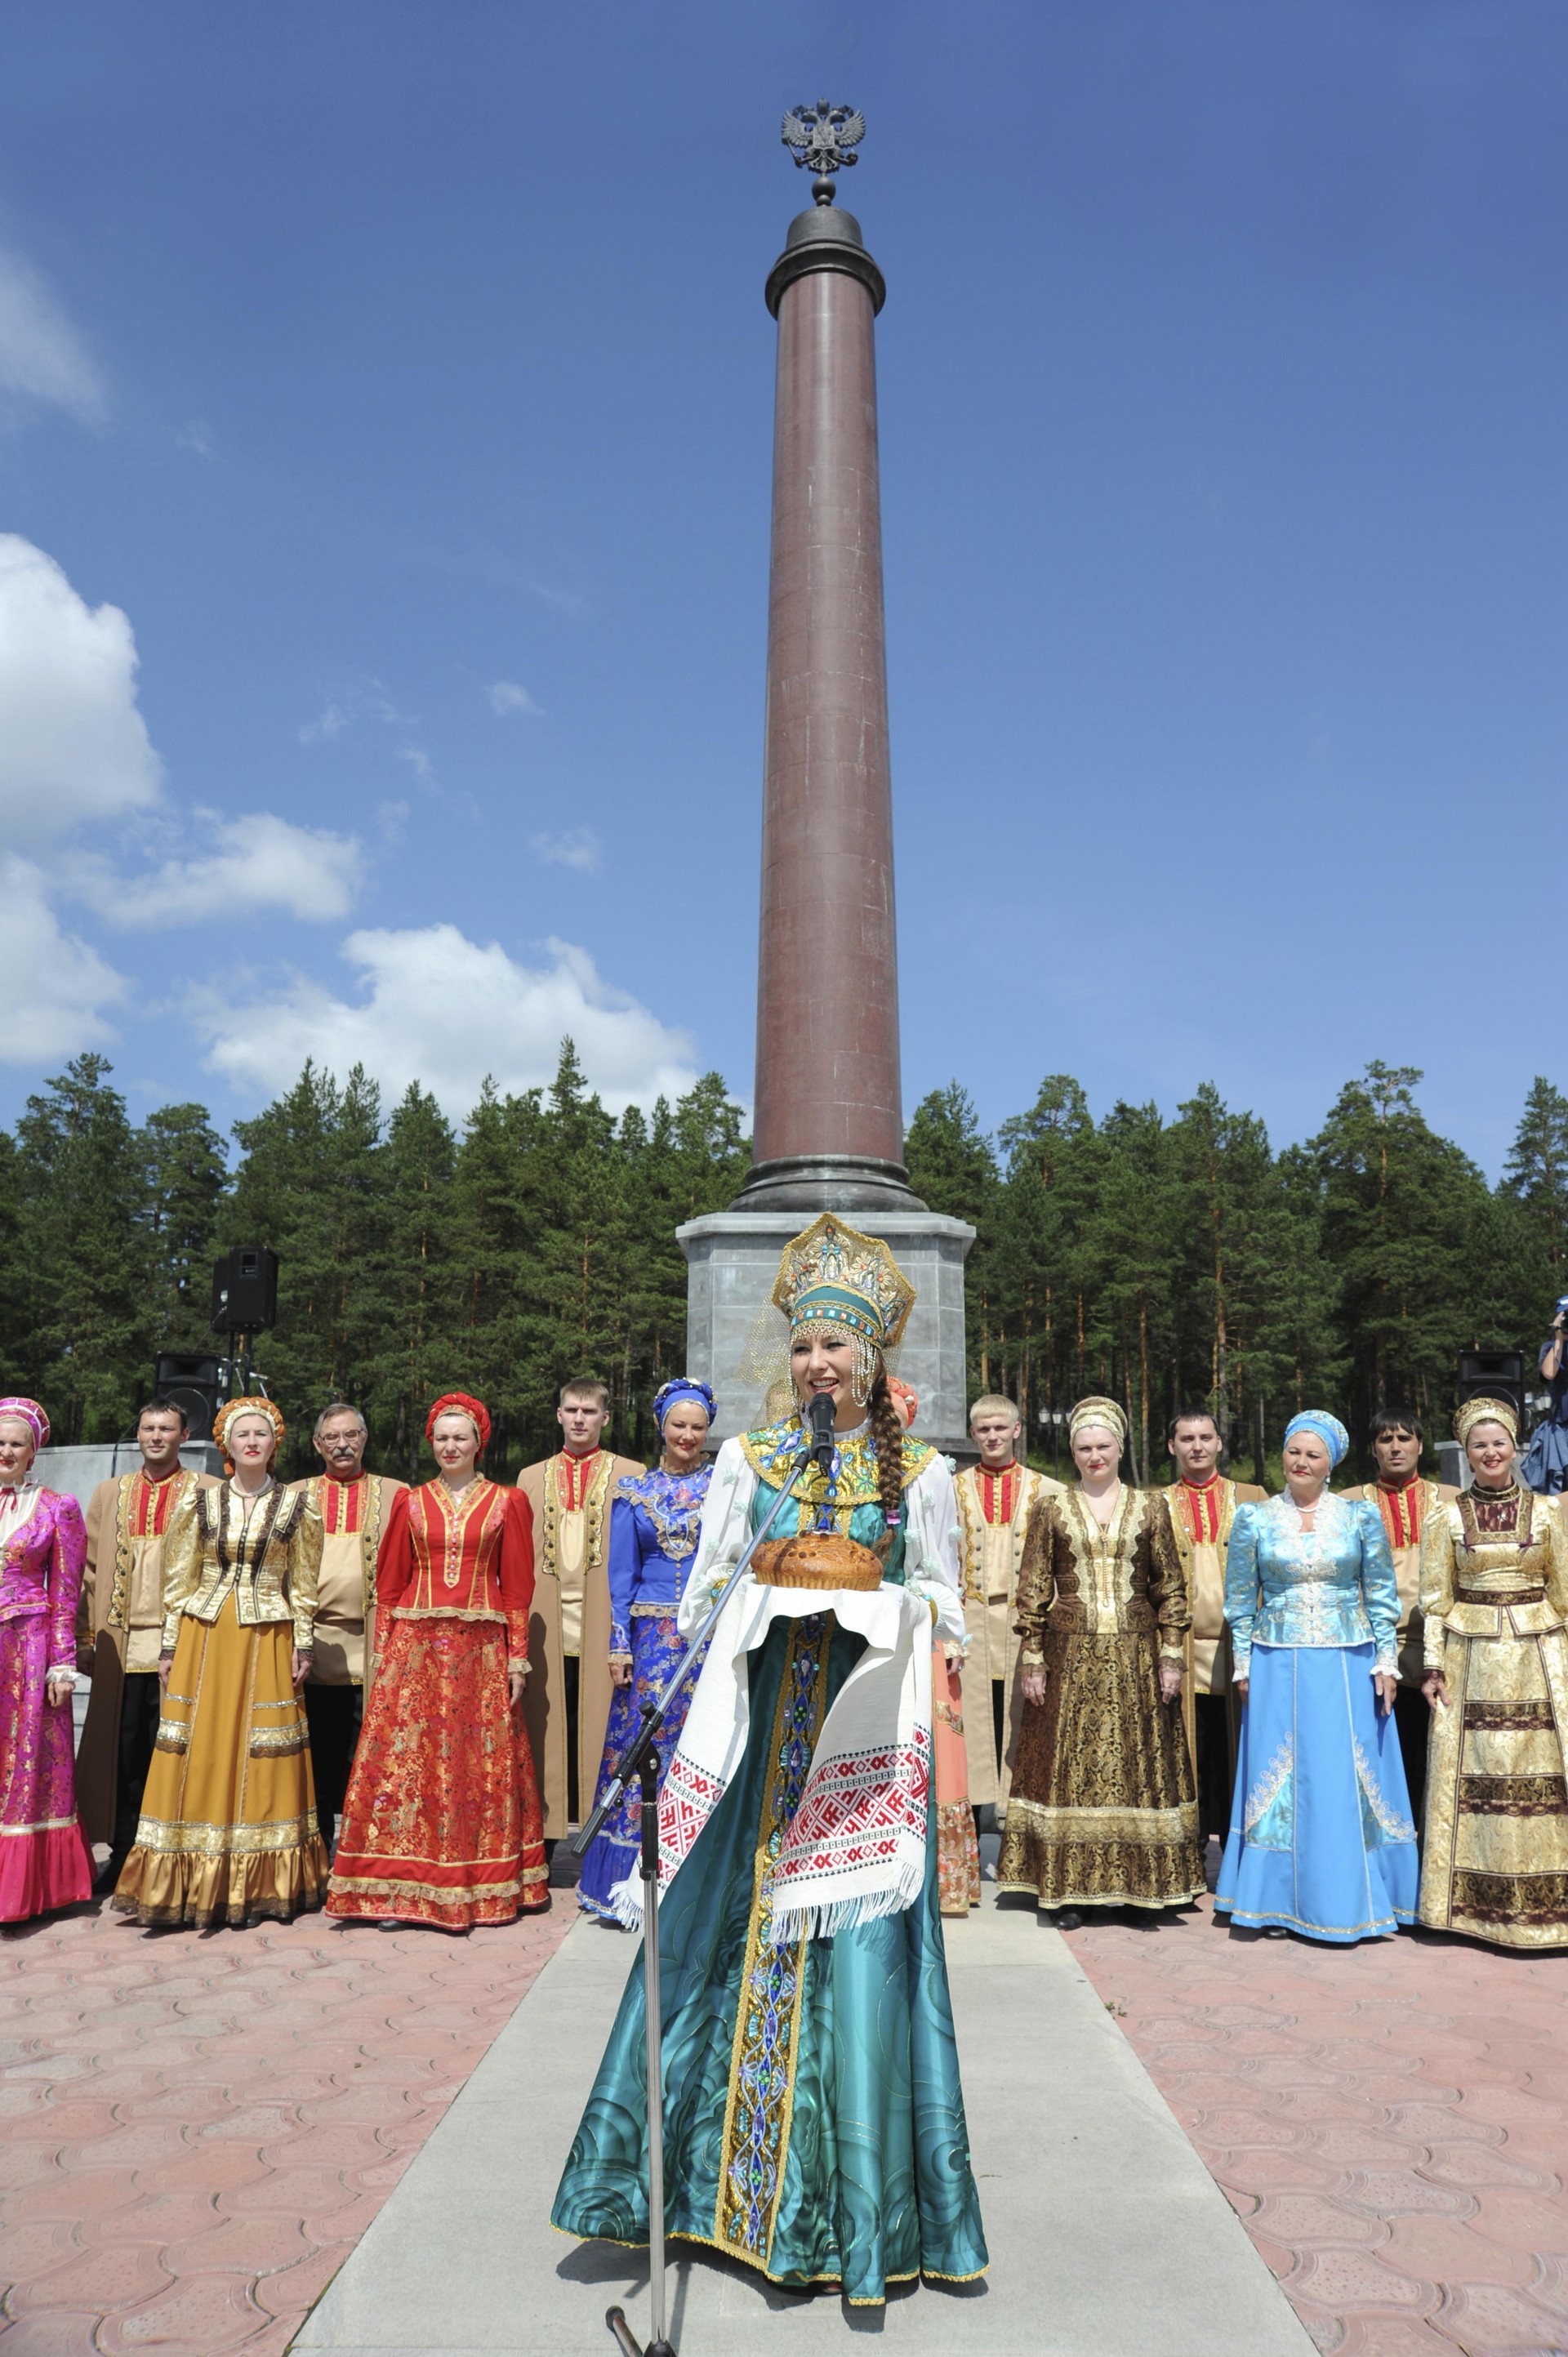 Pertunjukan seni di depan tugu yang menandai perbatasan Eropa dan Asia, di Ekaterinburg, Rusia.